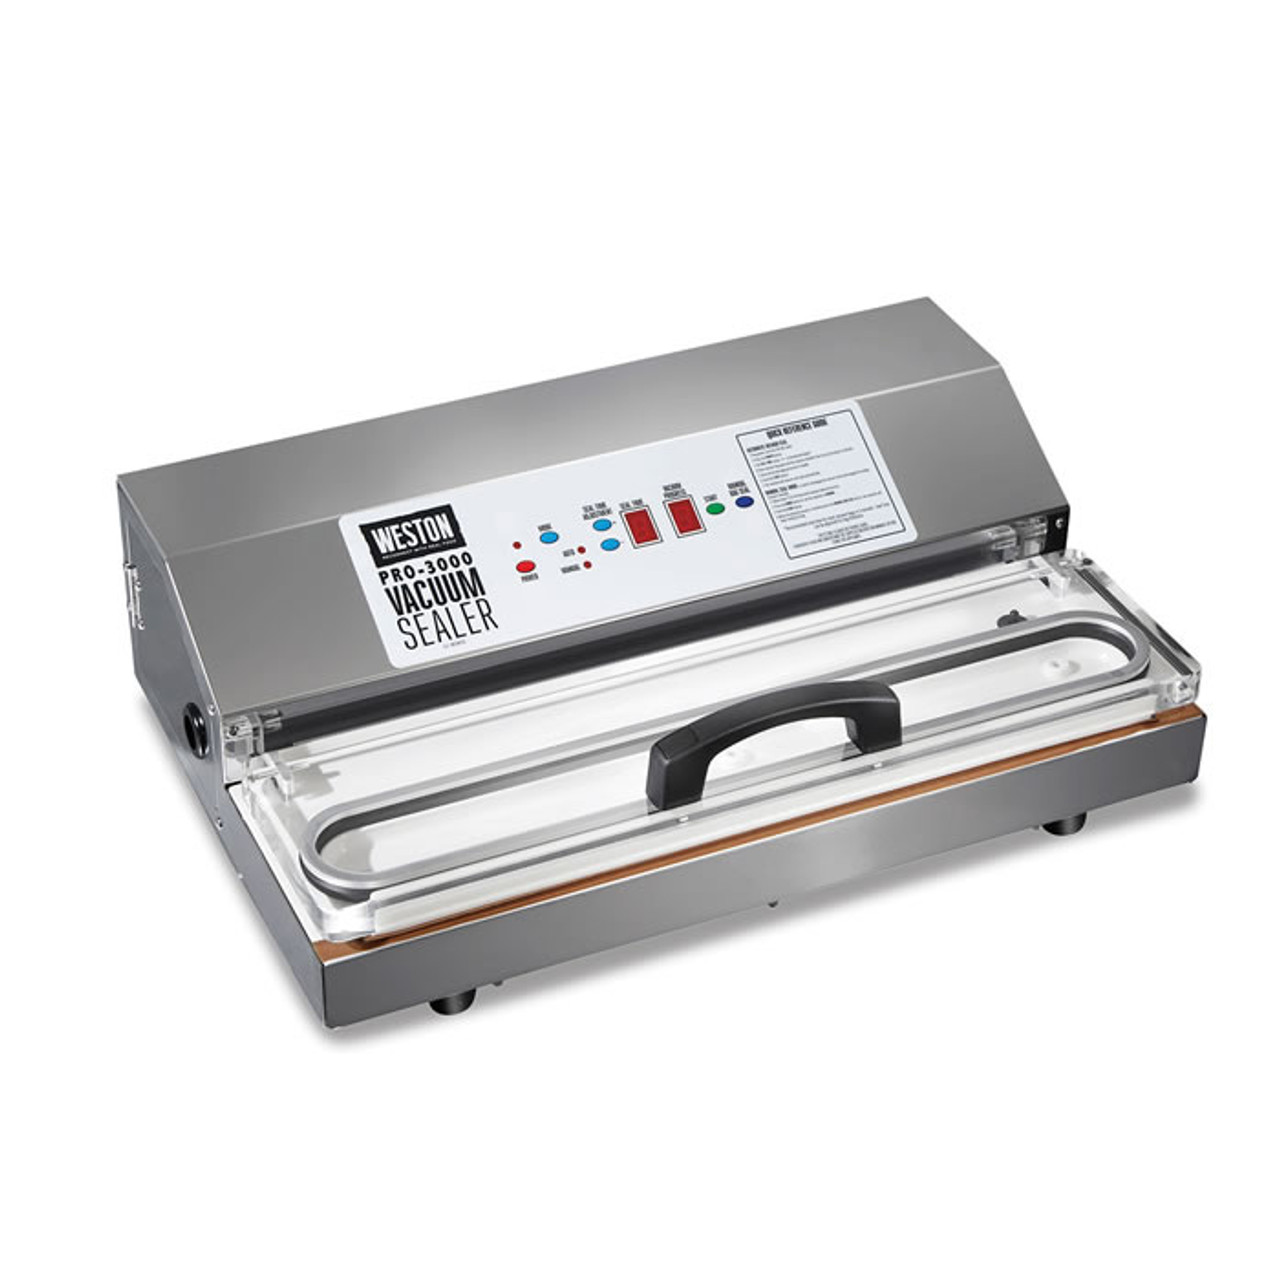 Weston 65-0101 Pro-2100 Vacuum Sealer